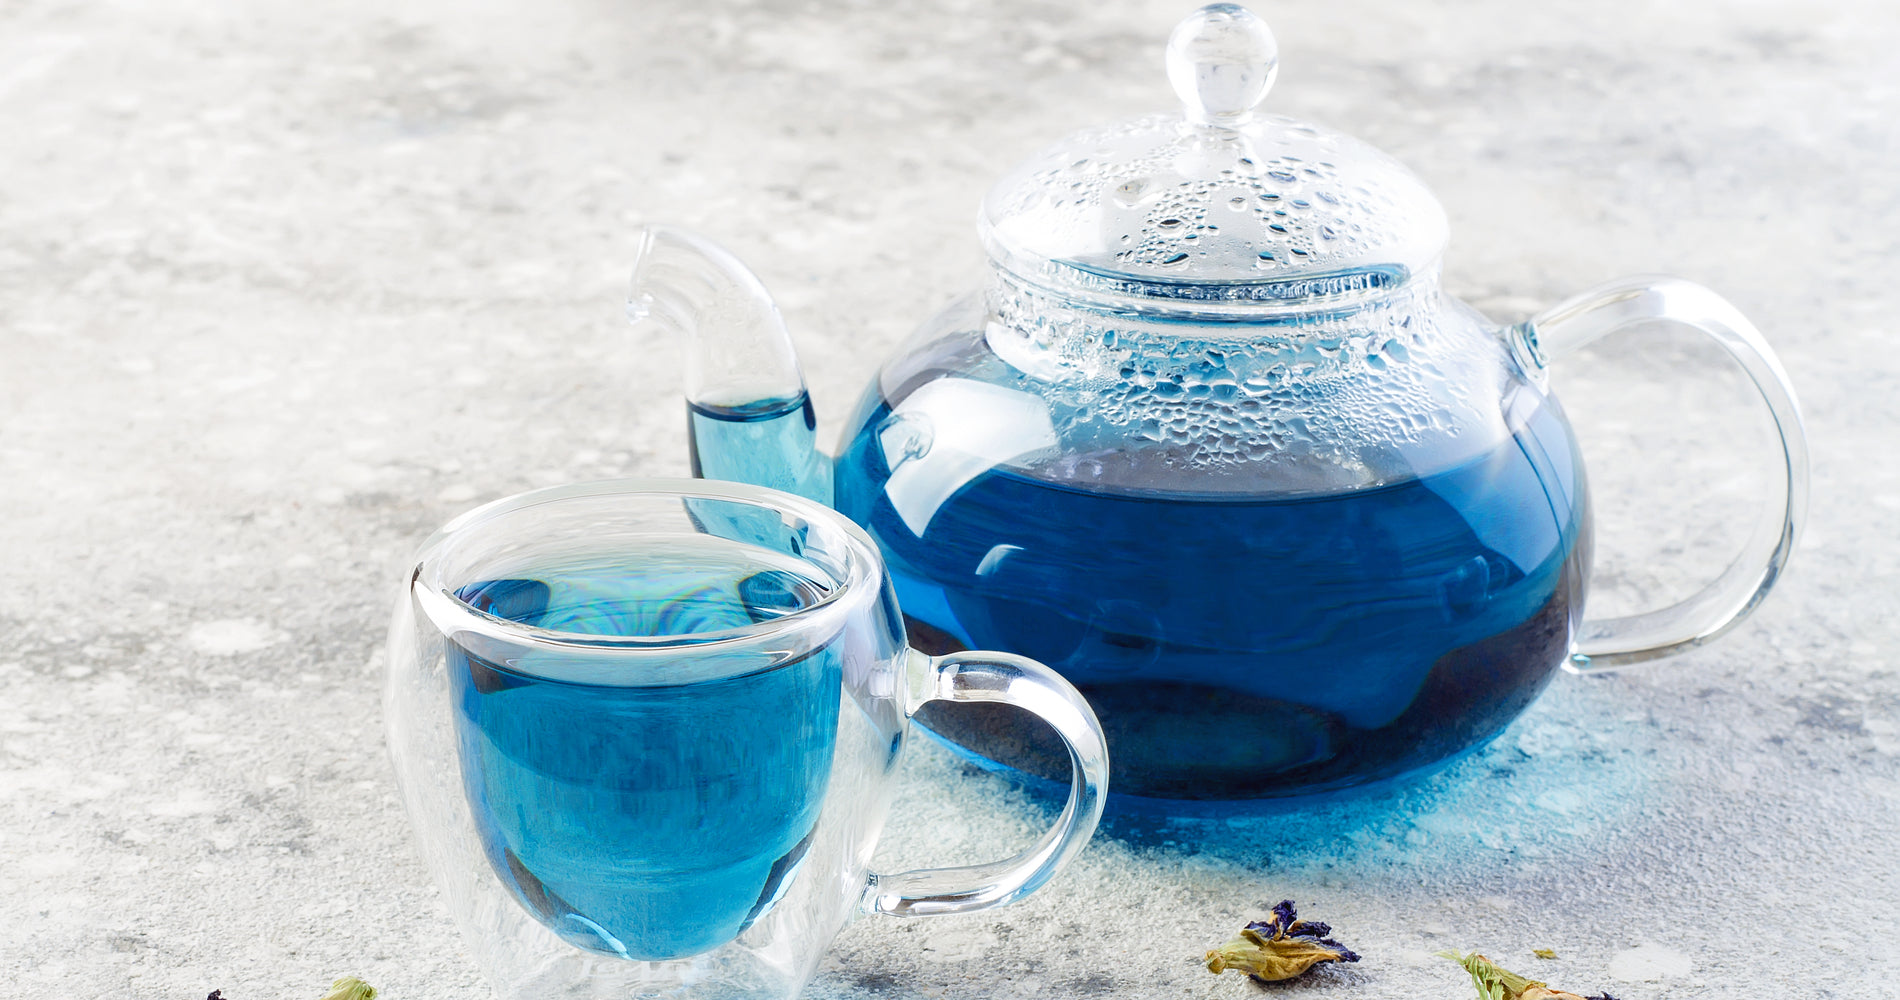 Nazani tea; Herbal Tea; Infusions; Rose tea;  Healthy Tea; Tea for Trade; HoReCa; Organic; Organic Tea; Luxury Brand; Luxury Tea; Sustainable brand; Loose leaf tea; Wellbeing; Lifestyle;  Nazani Tea London;